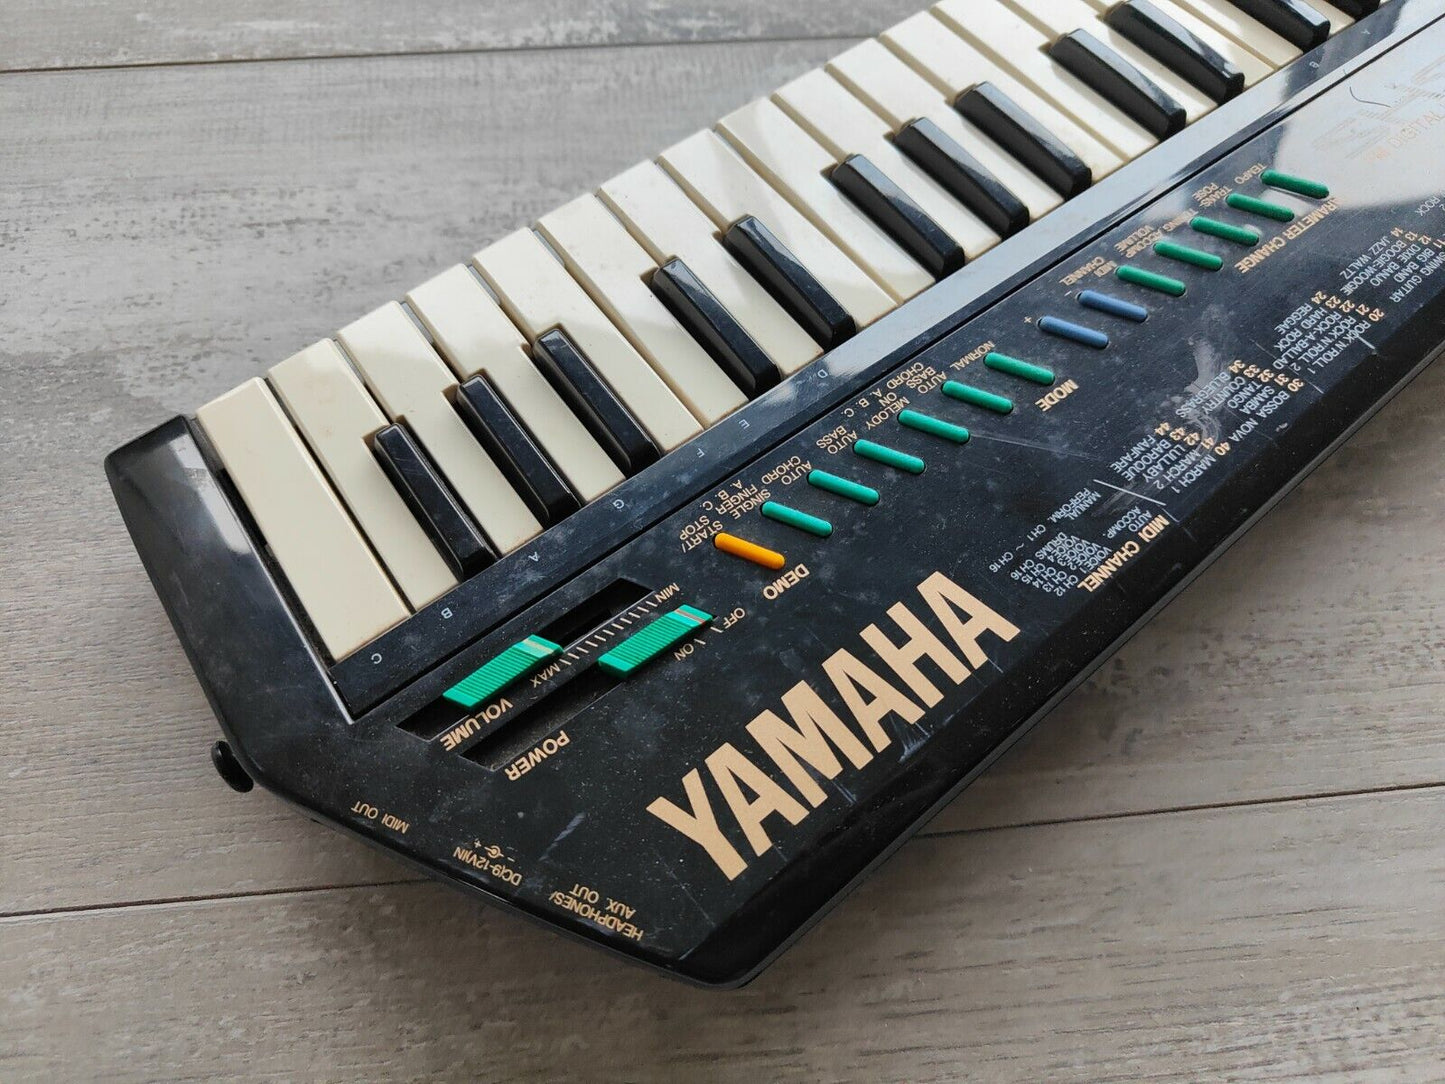 1987 Yamaha Japan SHS-10S Keytar ("Gui-Board") w/MIDI